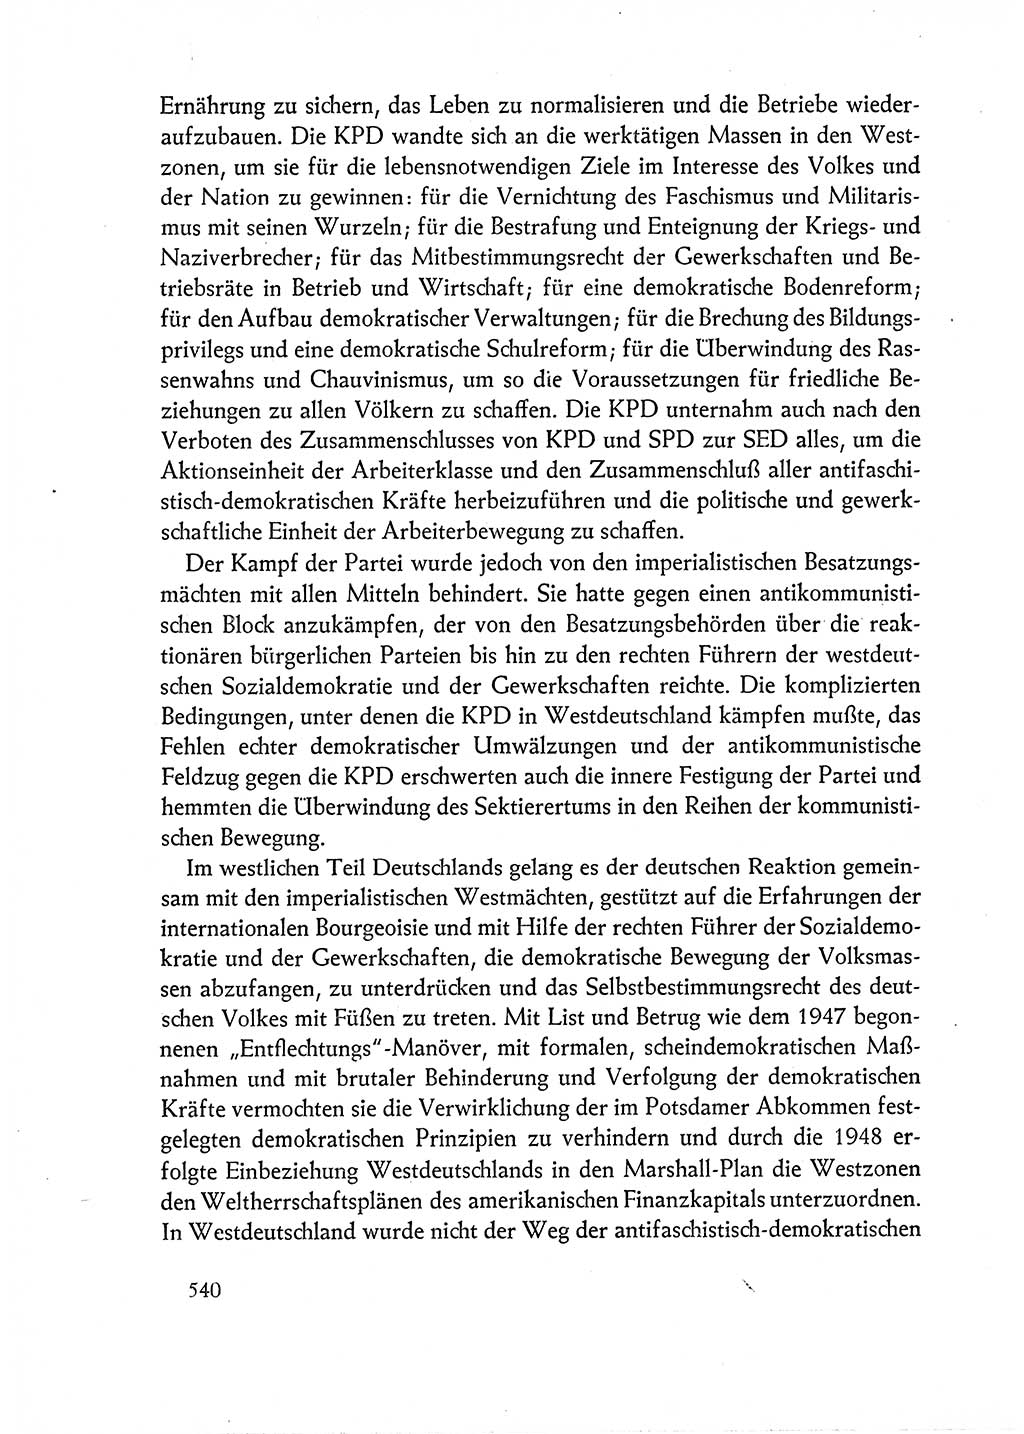 Dokumente der Sozialistischen Einheitspartei Deutschlands (SED) [Deutsche Demokratische Republik (DDR)] 1962-1963, Seite 540 (Dok. SED DDR 1962-1963, S. 540)